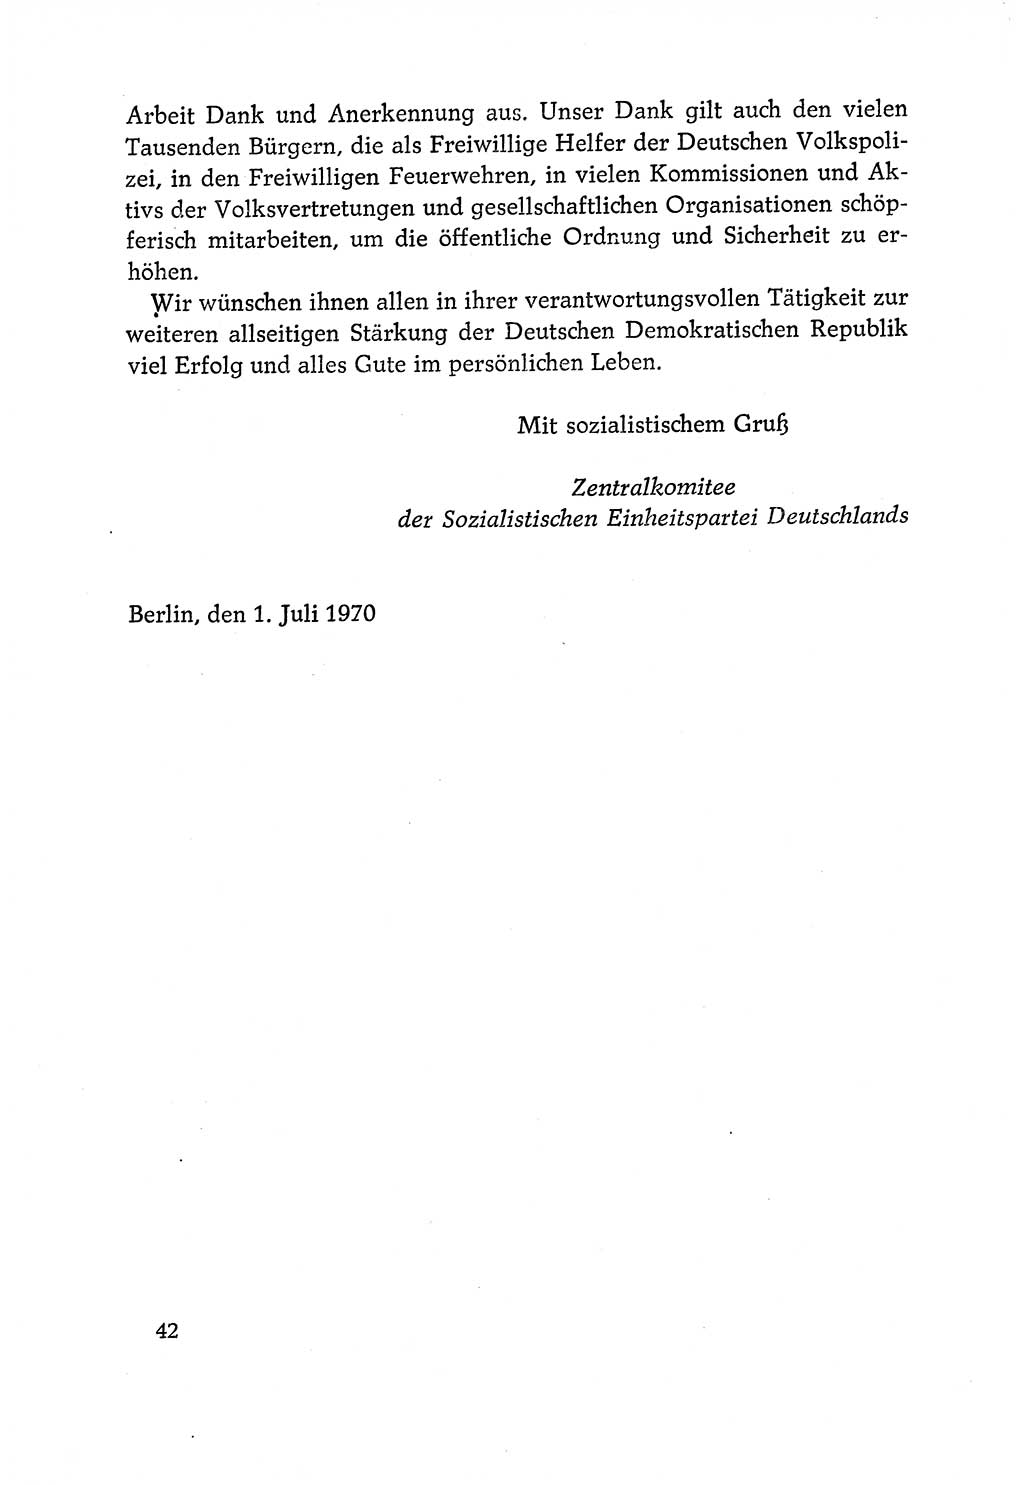 Dokumente der Sozialistischen Einheitspartei Deutschlands (SED) [Deutsche Demokratische Republik (DDR)] 1970-1971, Seite 42 (Dok. SED DDR 1970-1971, S. 42)